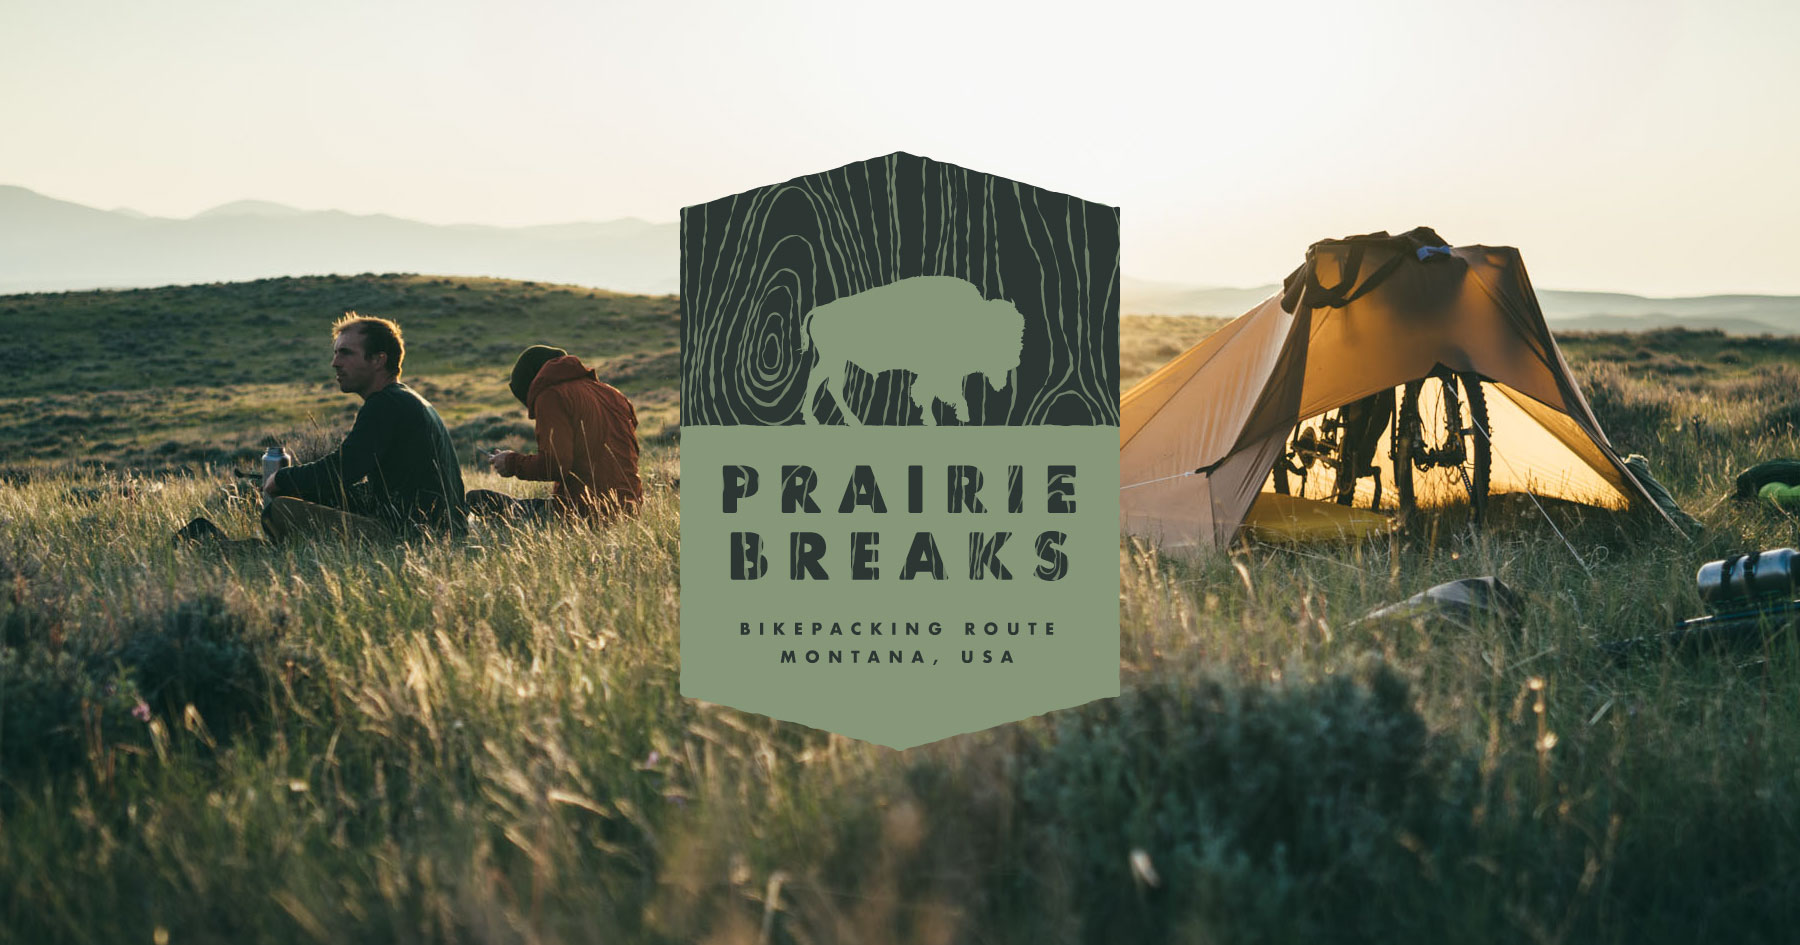 Prairie Breaks Bikepacking Route